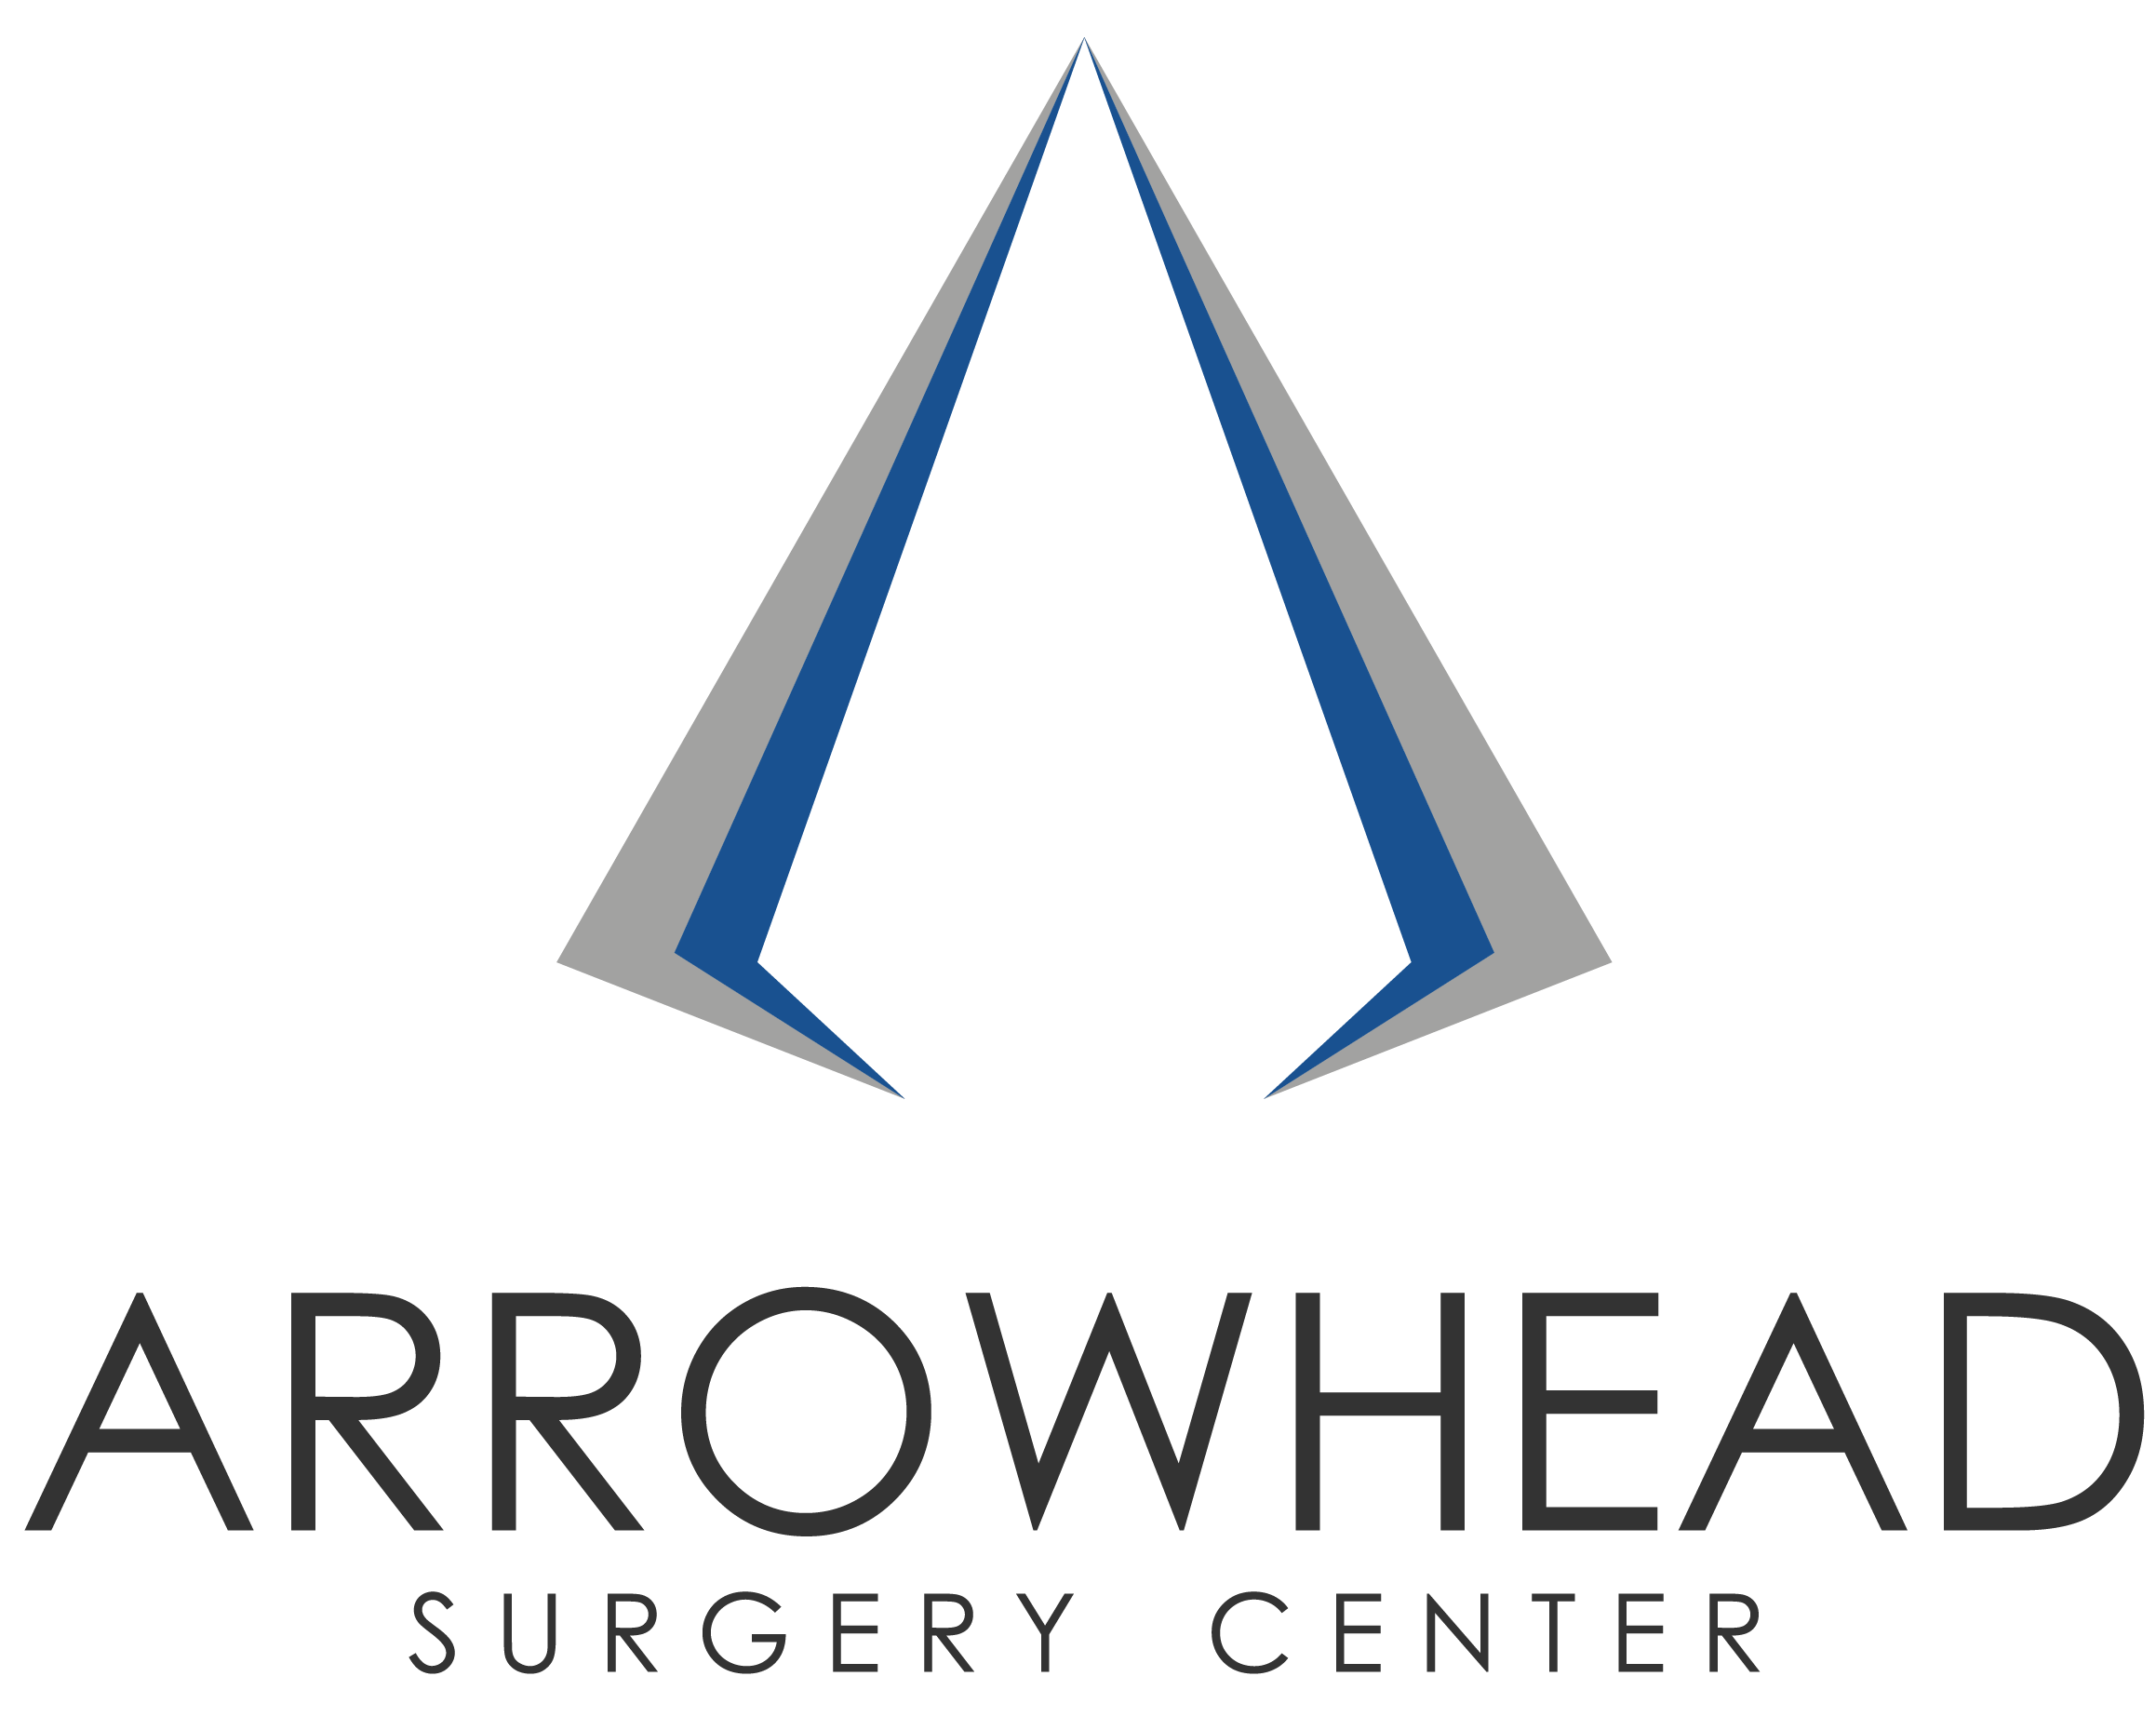 Arrowhead Surgery Center